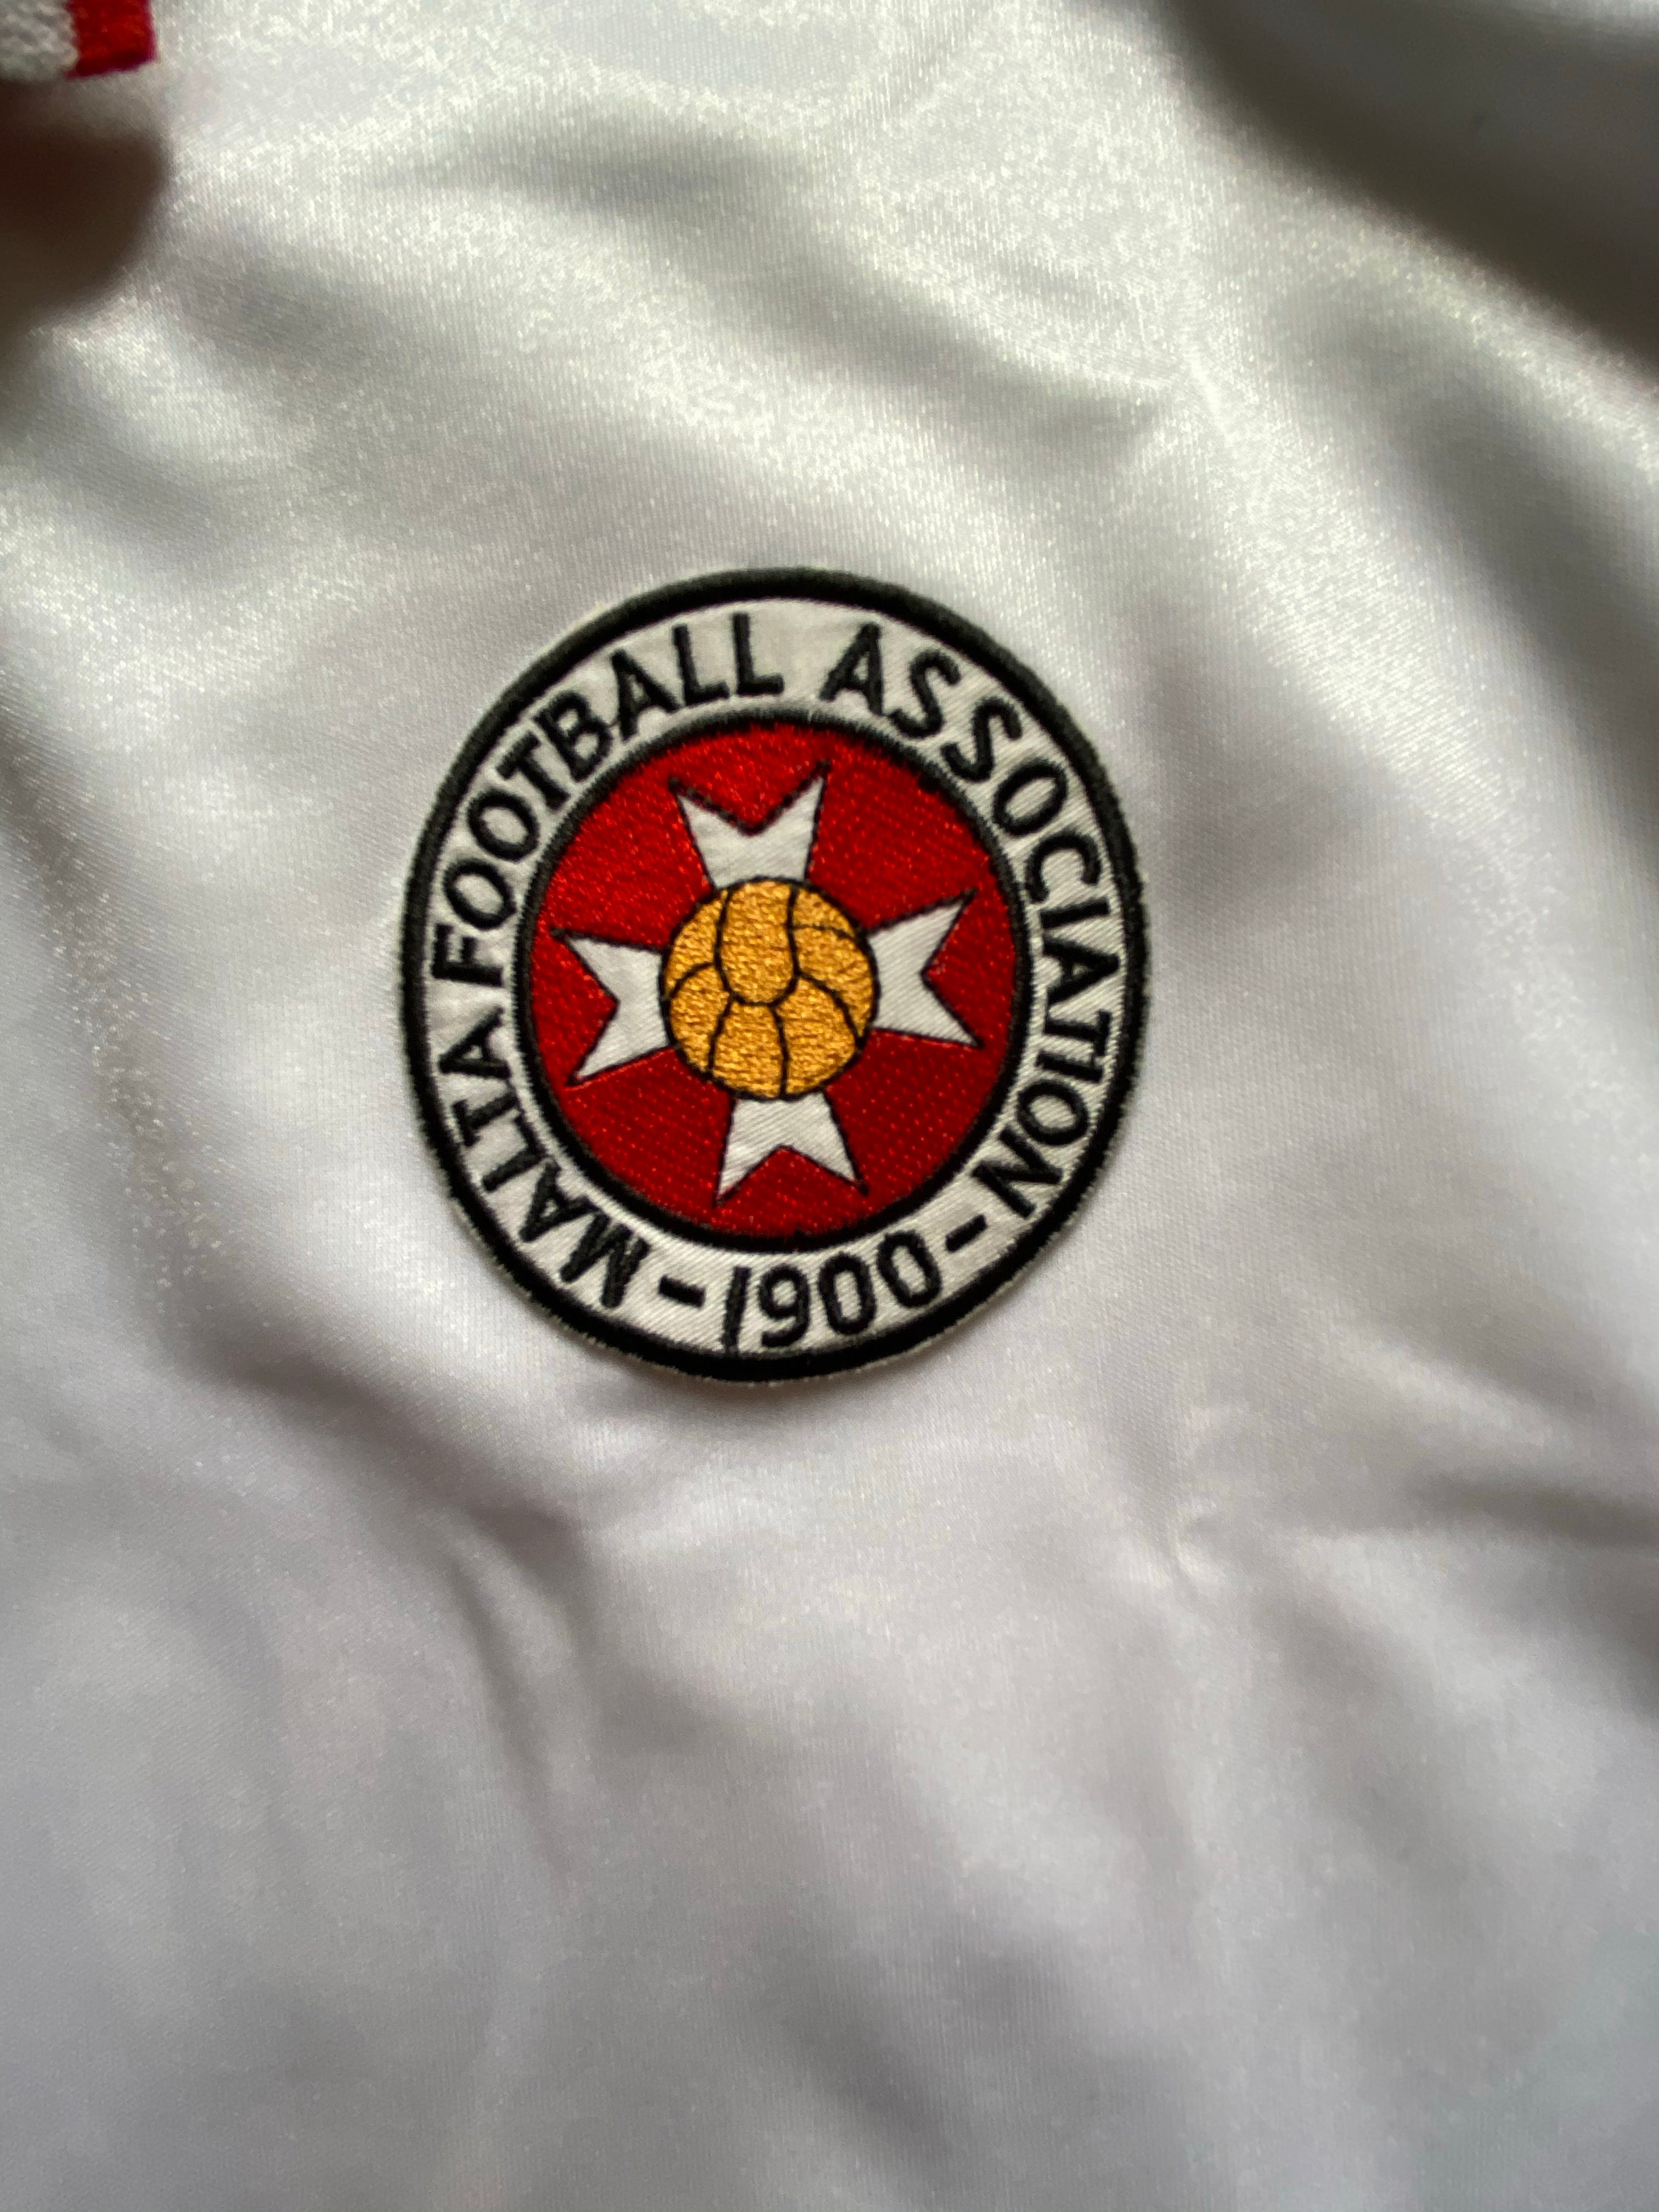 2001/02 Camiseta visitante de Malta (S) 9/10